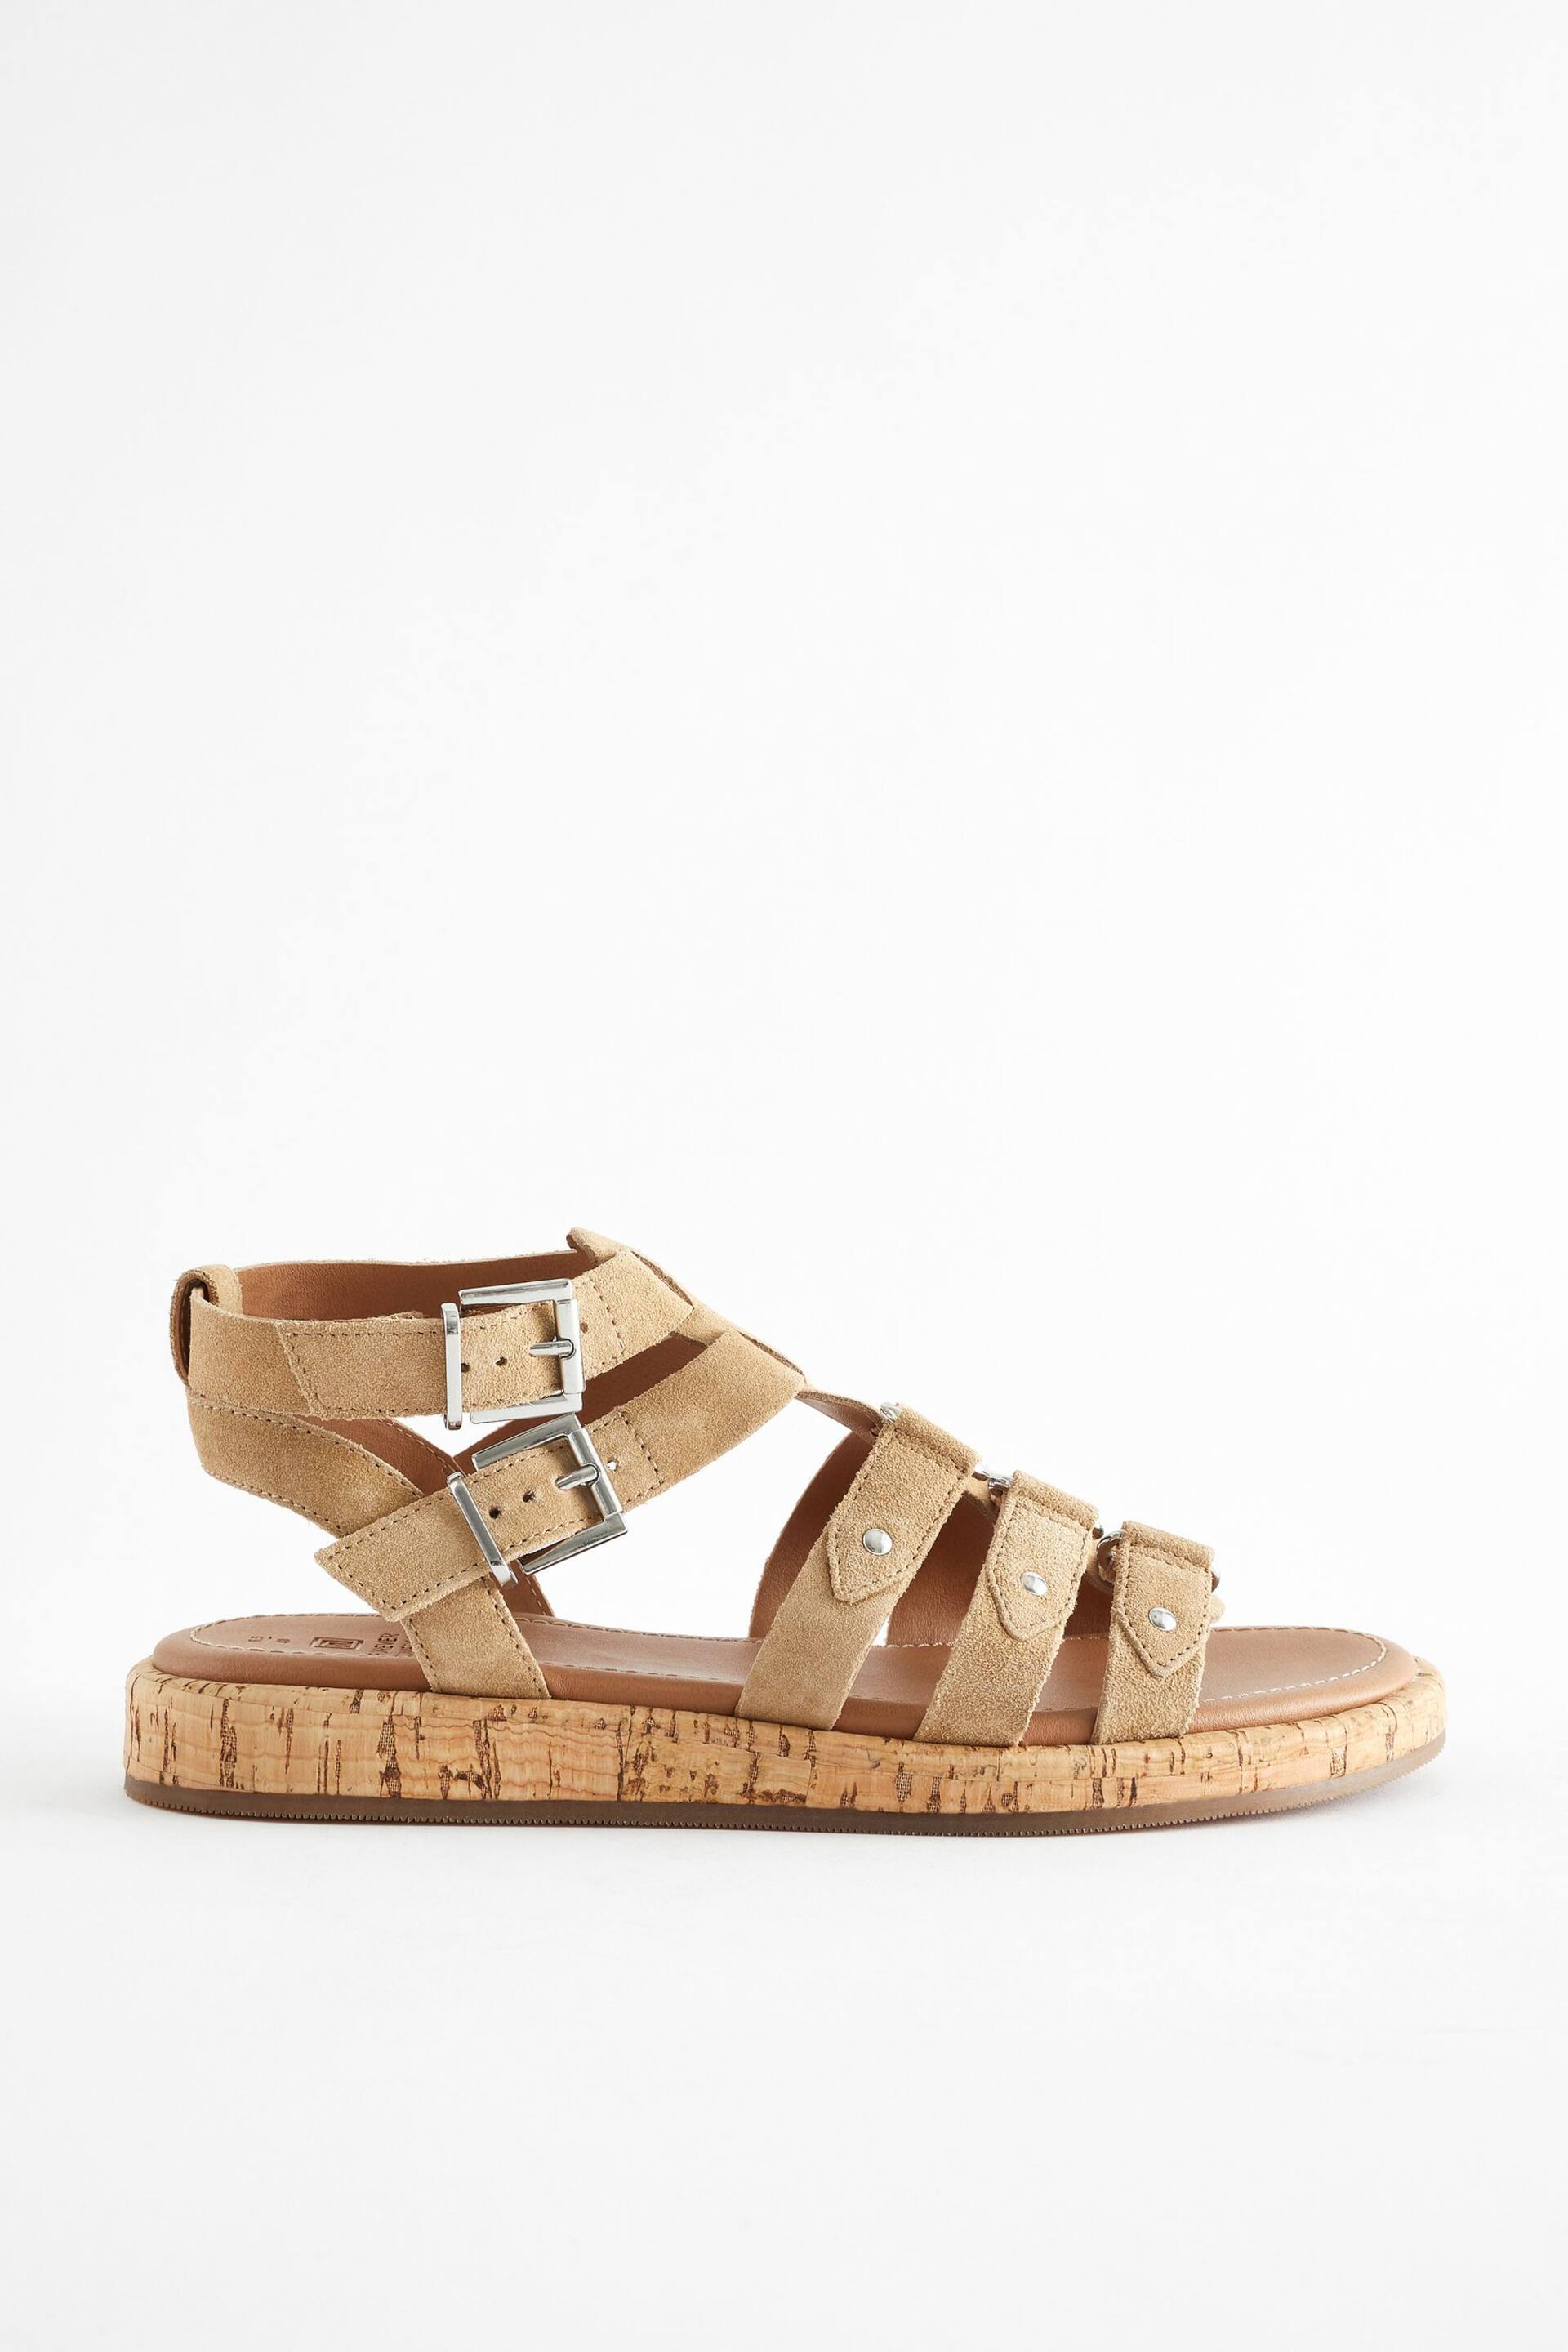 Sand Brown Regular/Wide Fit Forever Comfort® Leather Gladiator Sandals - Image 3 of 6